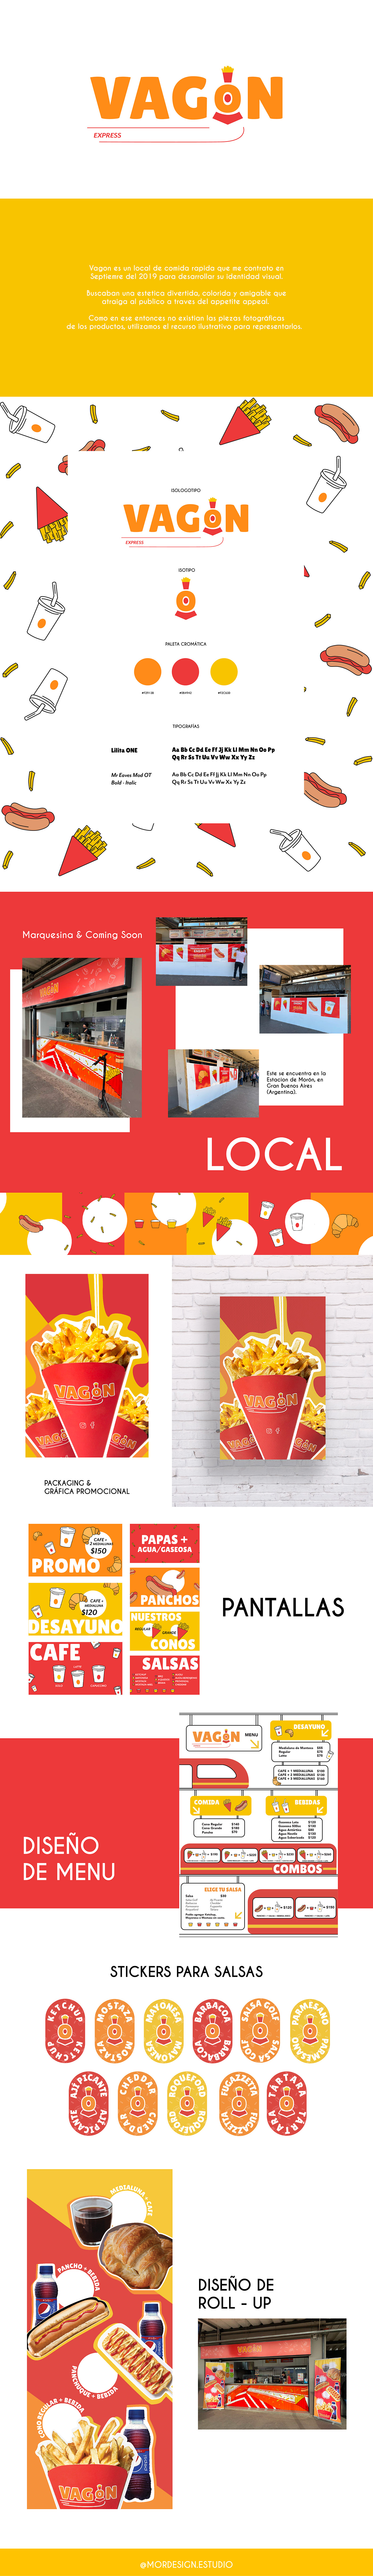 brand branding  comida rápida Fast food fast food brand Identidad Corporativa identidad visual LOCAL DE COMIDA RÁPIDA